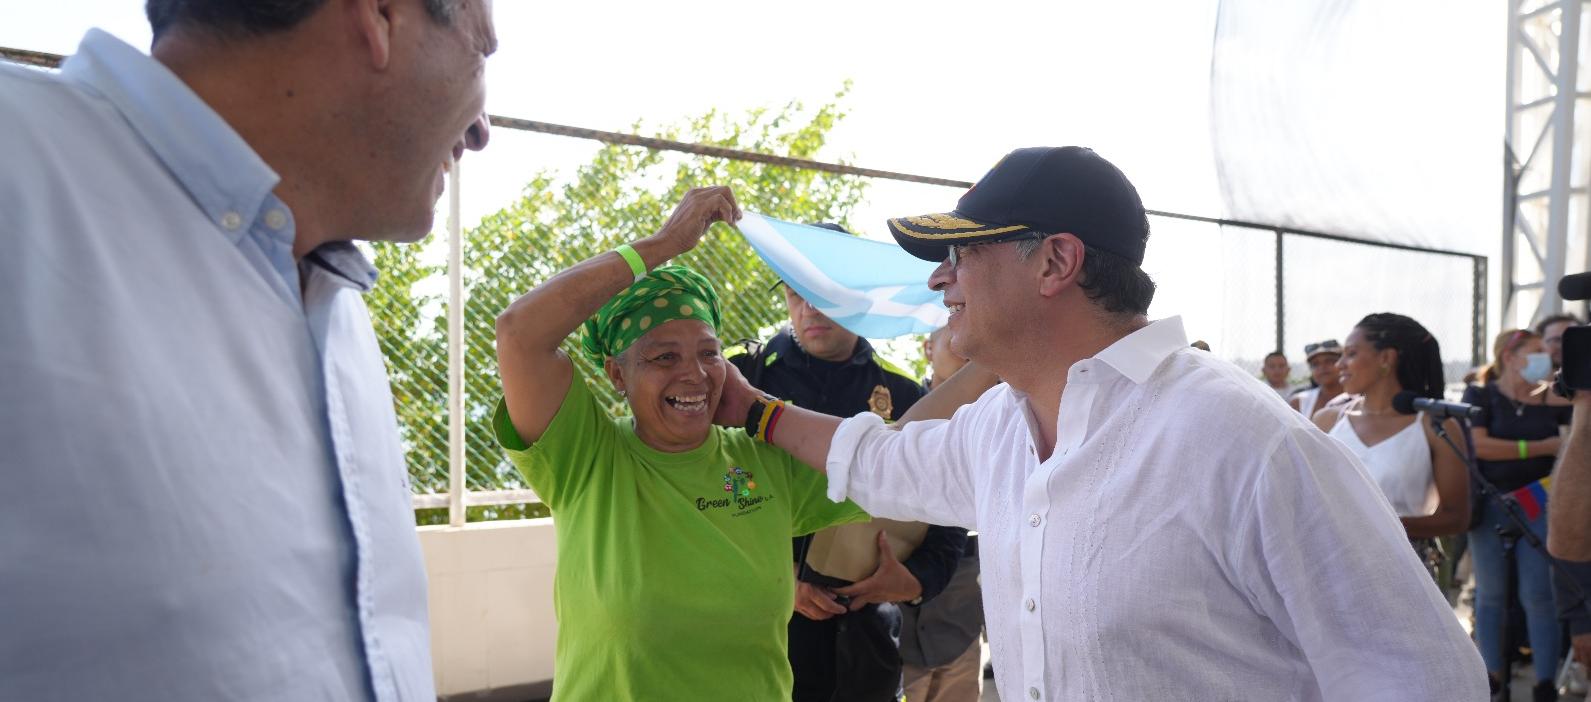 El presidente Petro saluda a una ciudadana isleña durante su visita a San Andrés